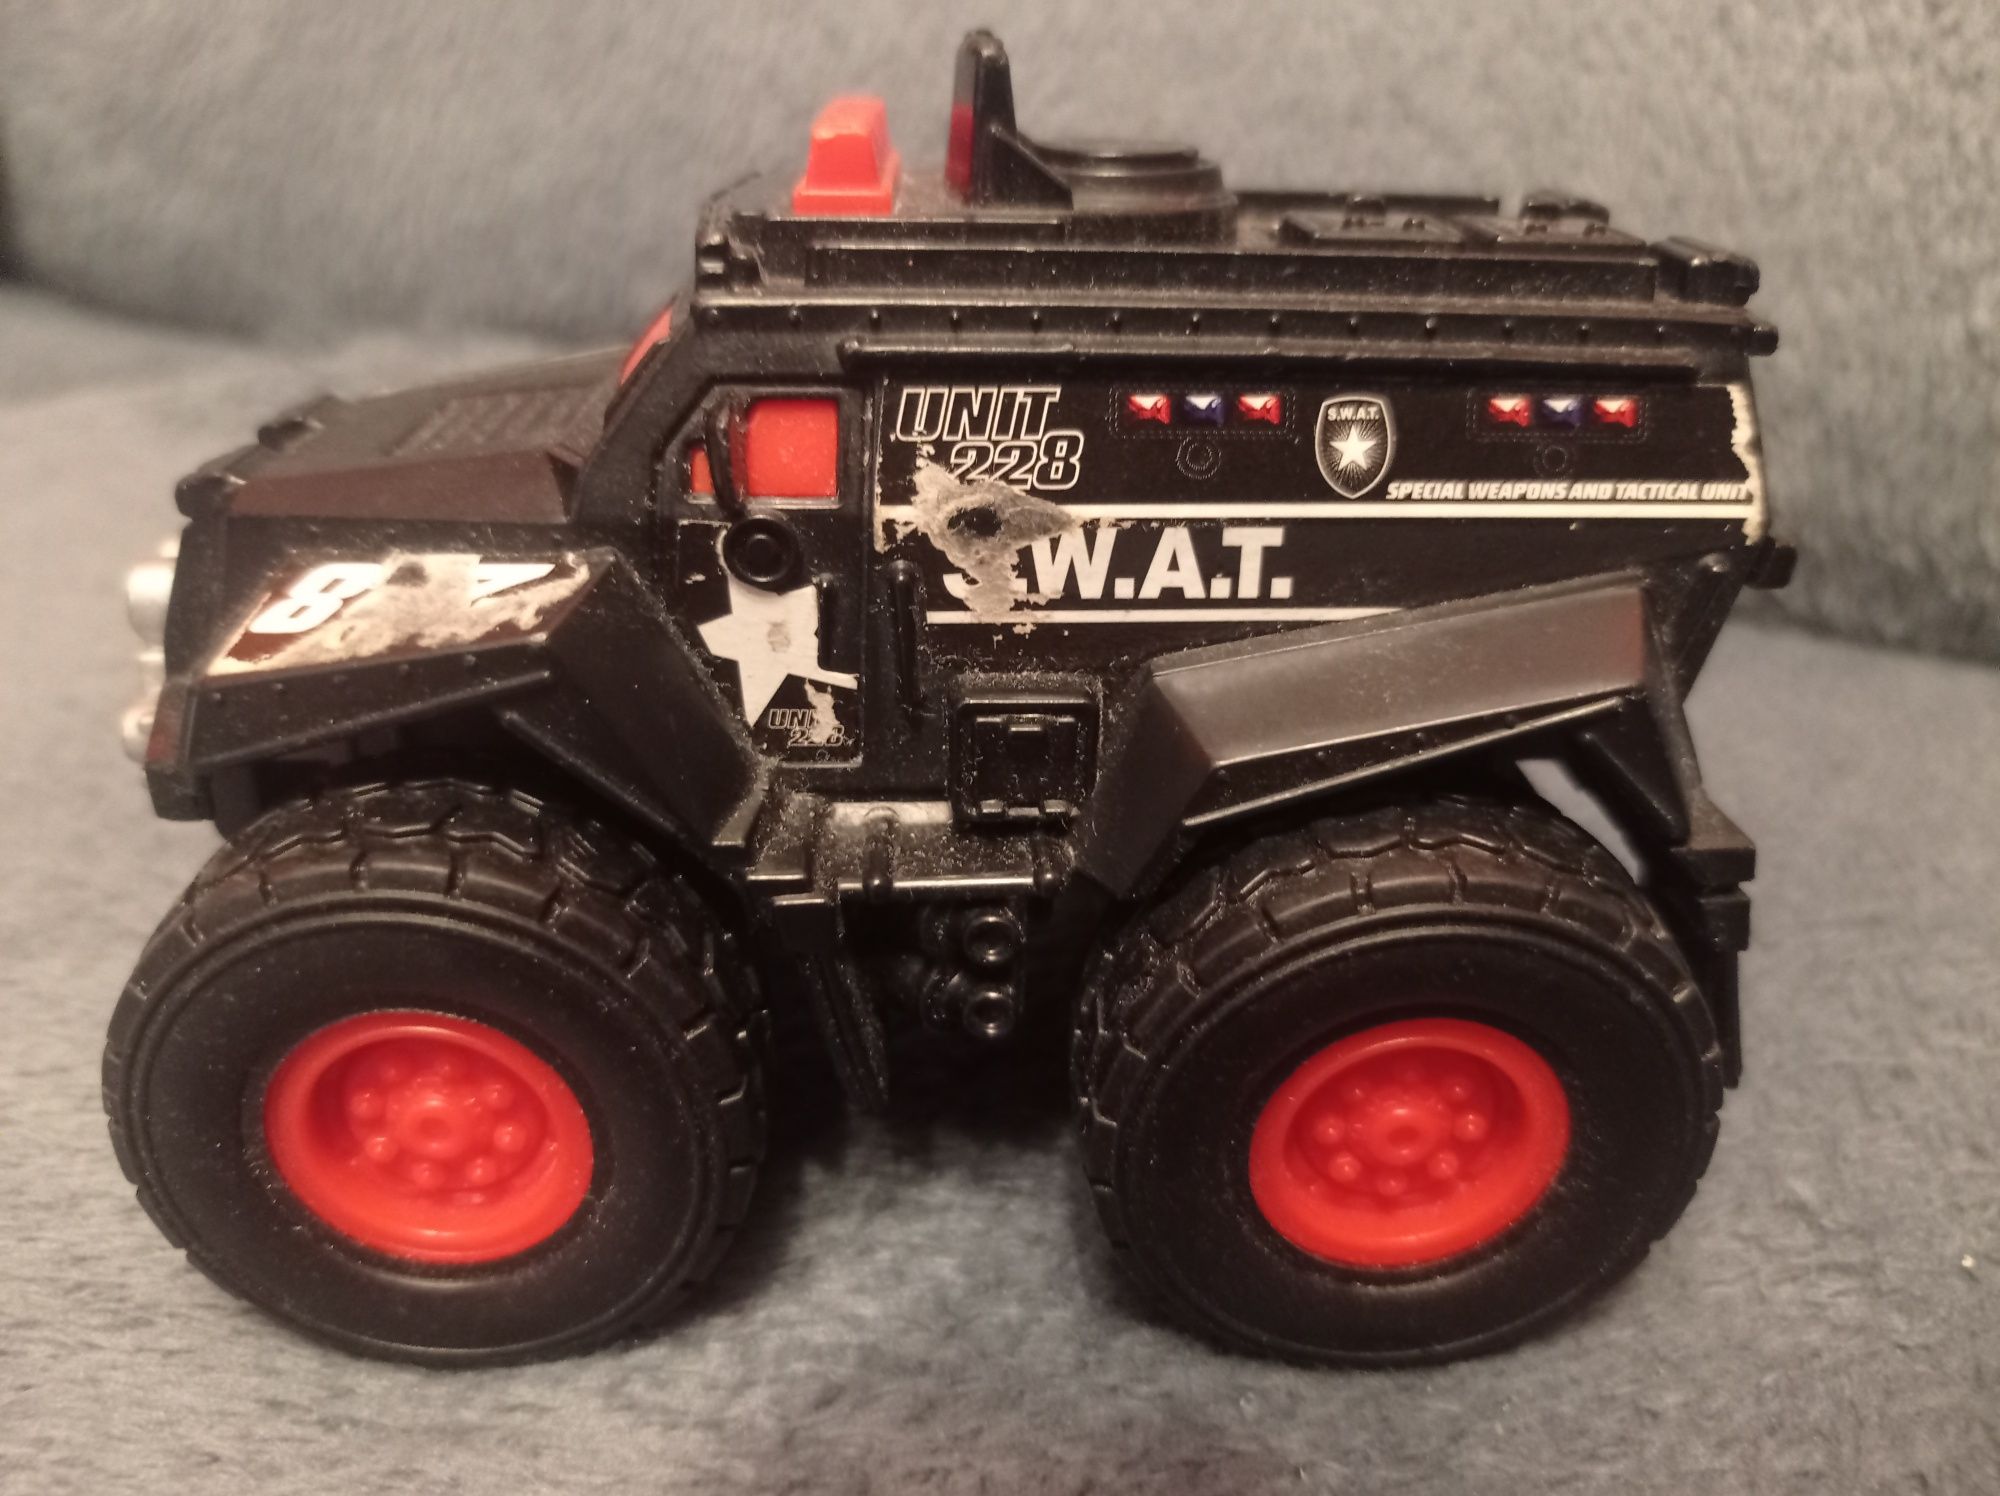 Samochód S.W.A.T 12x8x8